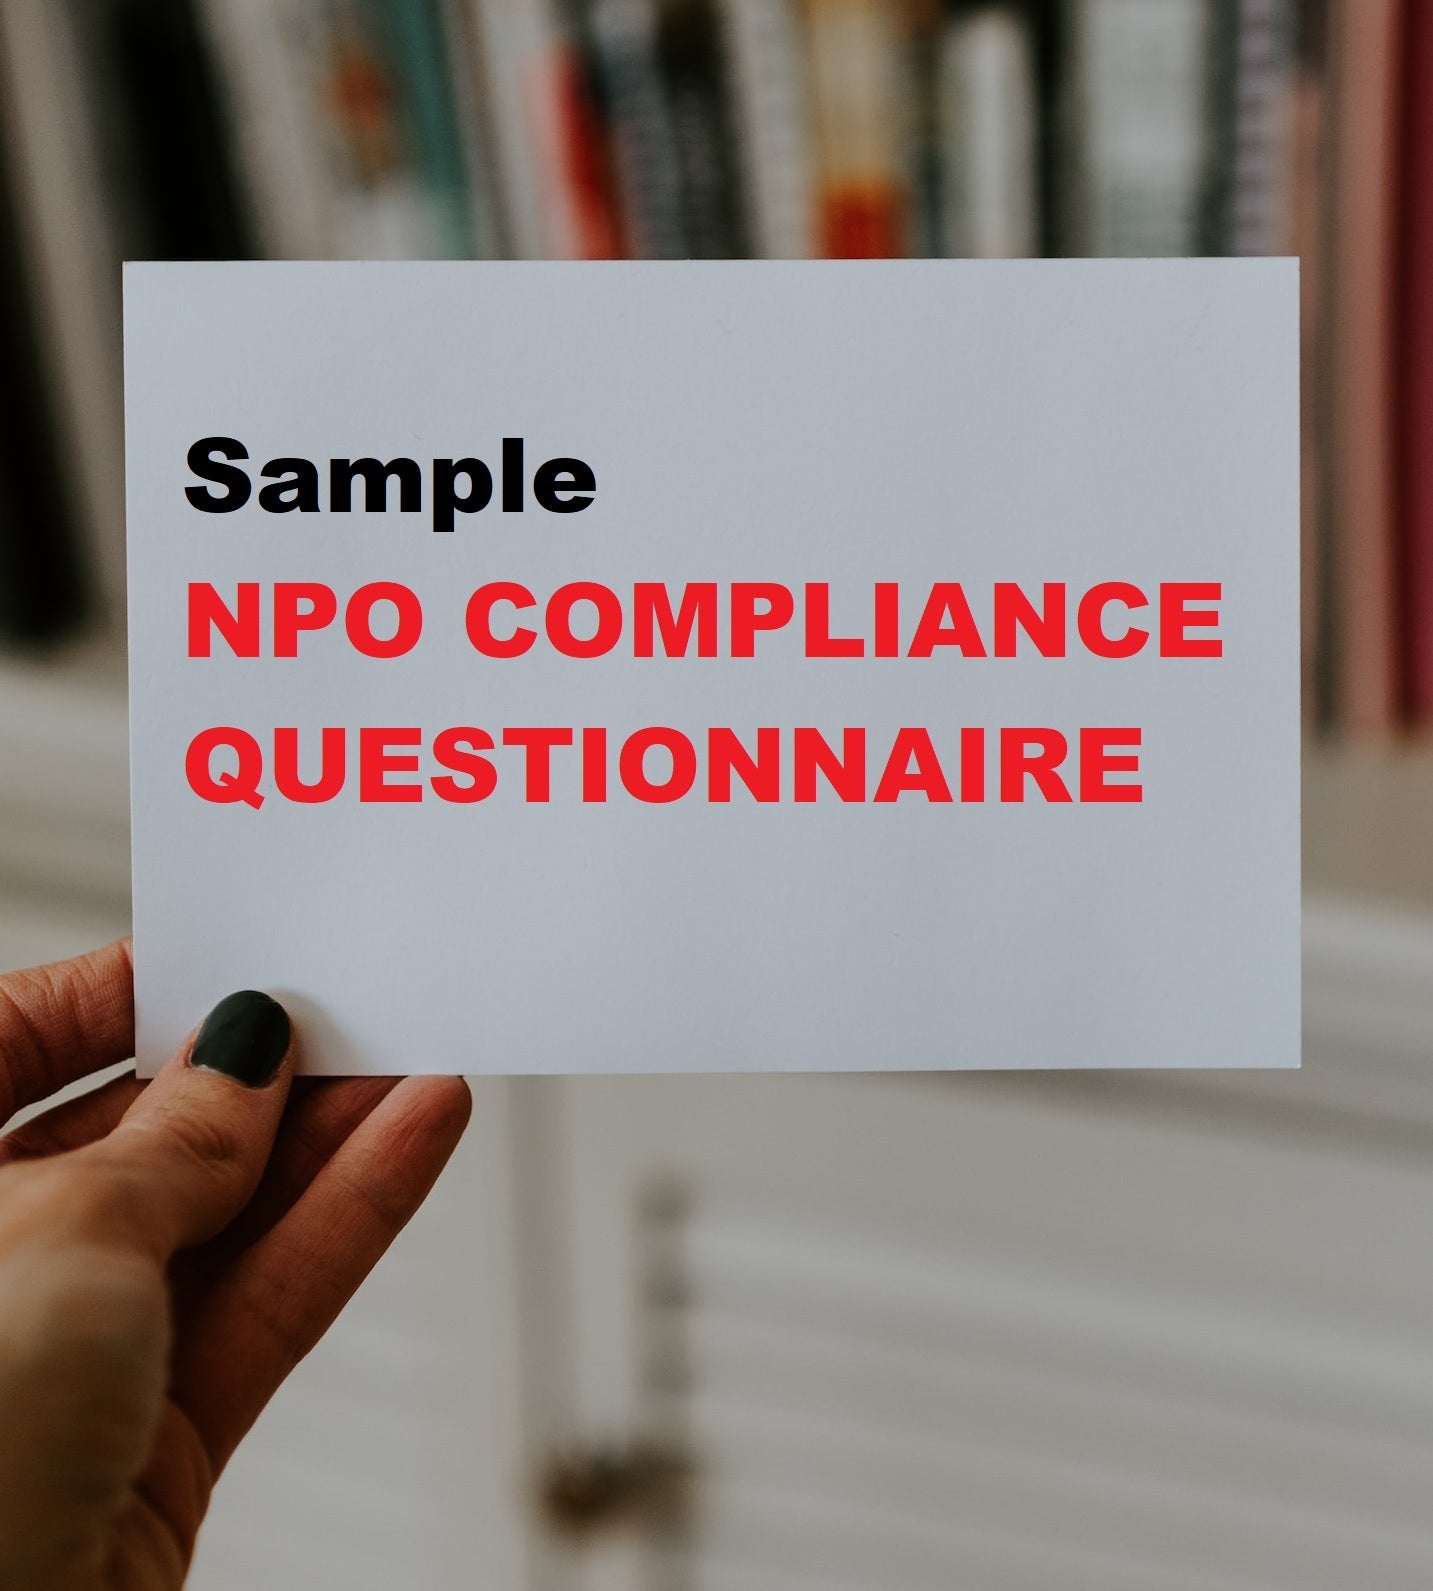 NPO Compliance Questionnaire